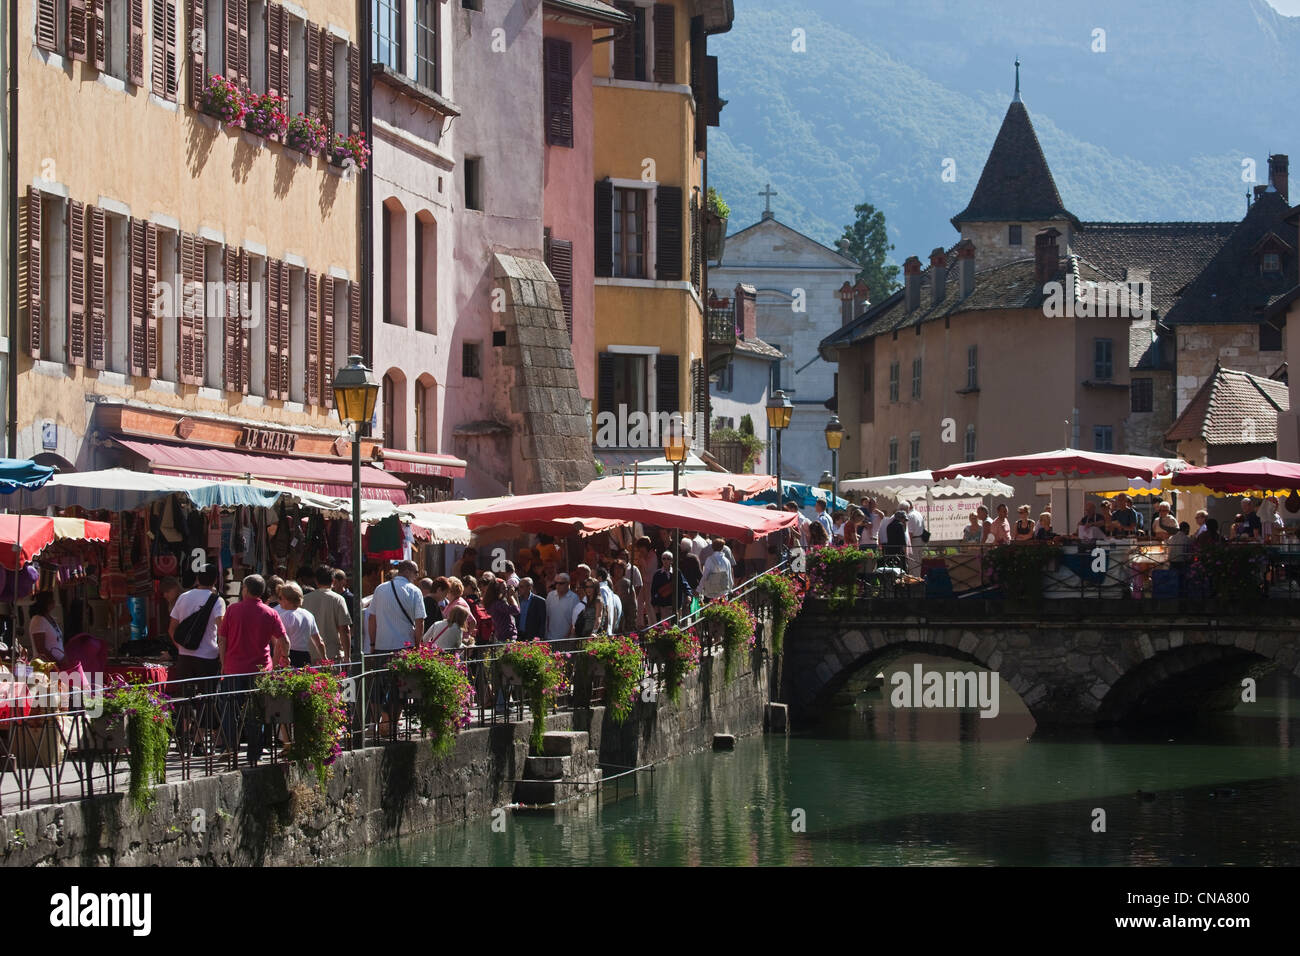 France, Haute Savoie, Annecy, the Quai de l'Eve che a market day and the Palais de l'Ile on Thiou Stock Photo